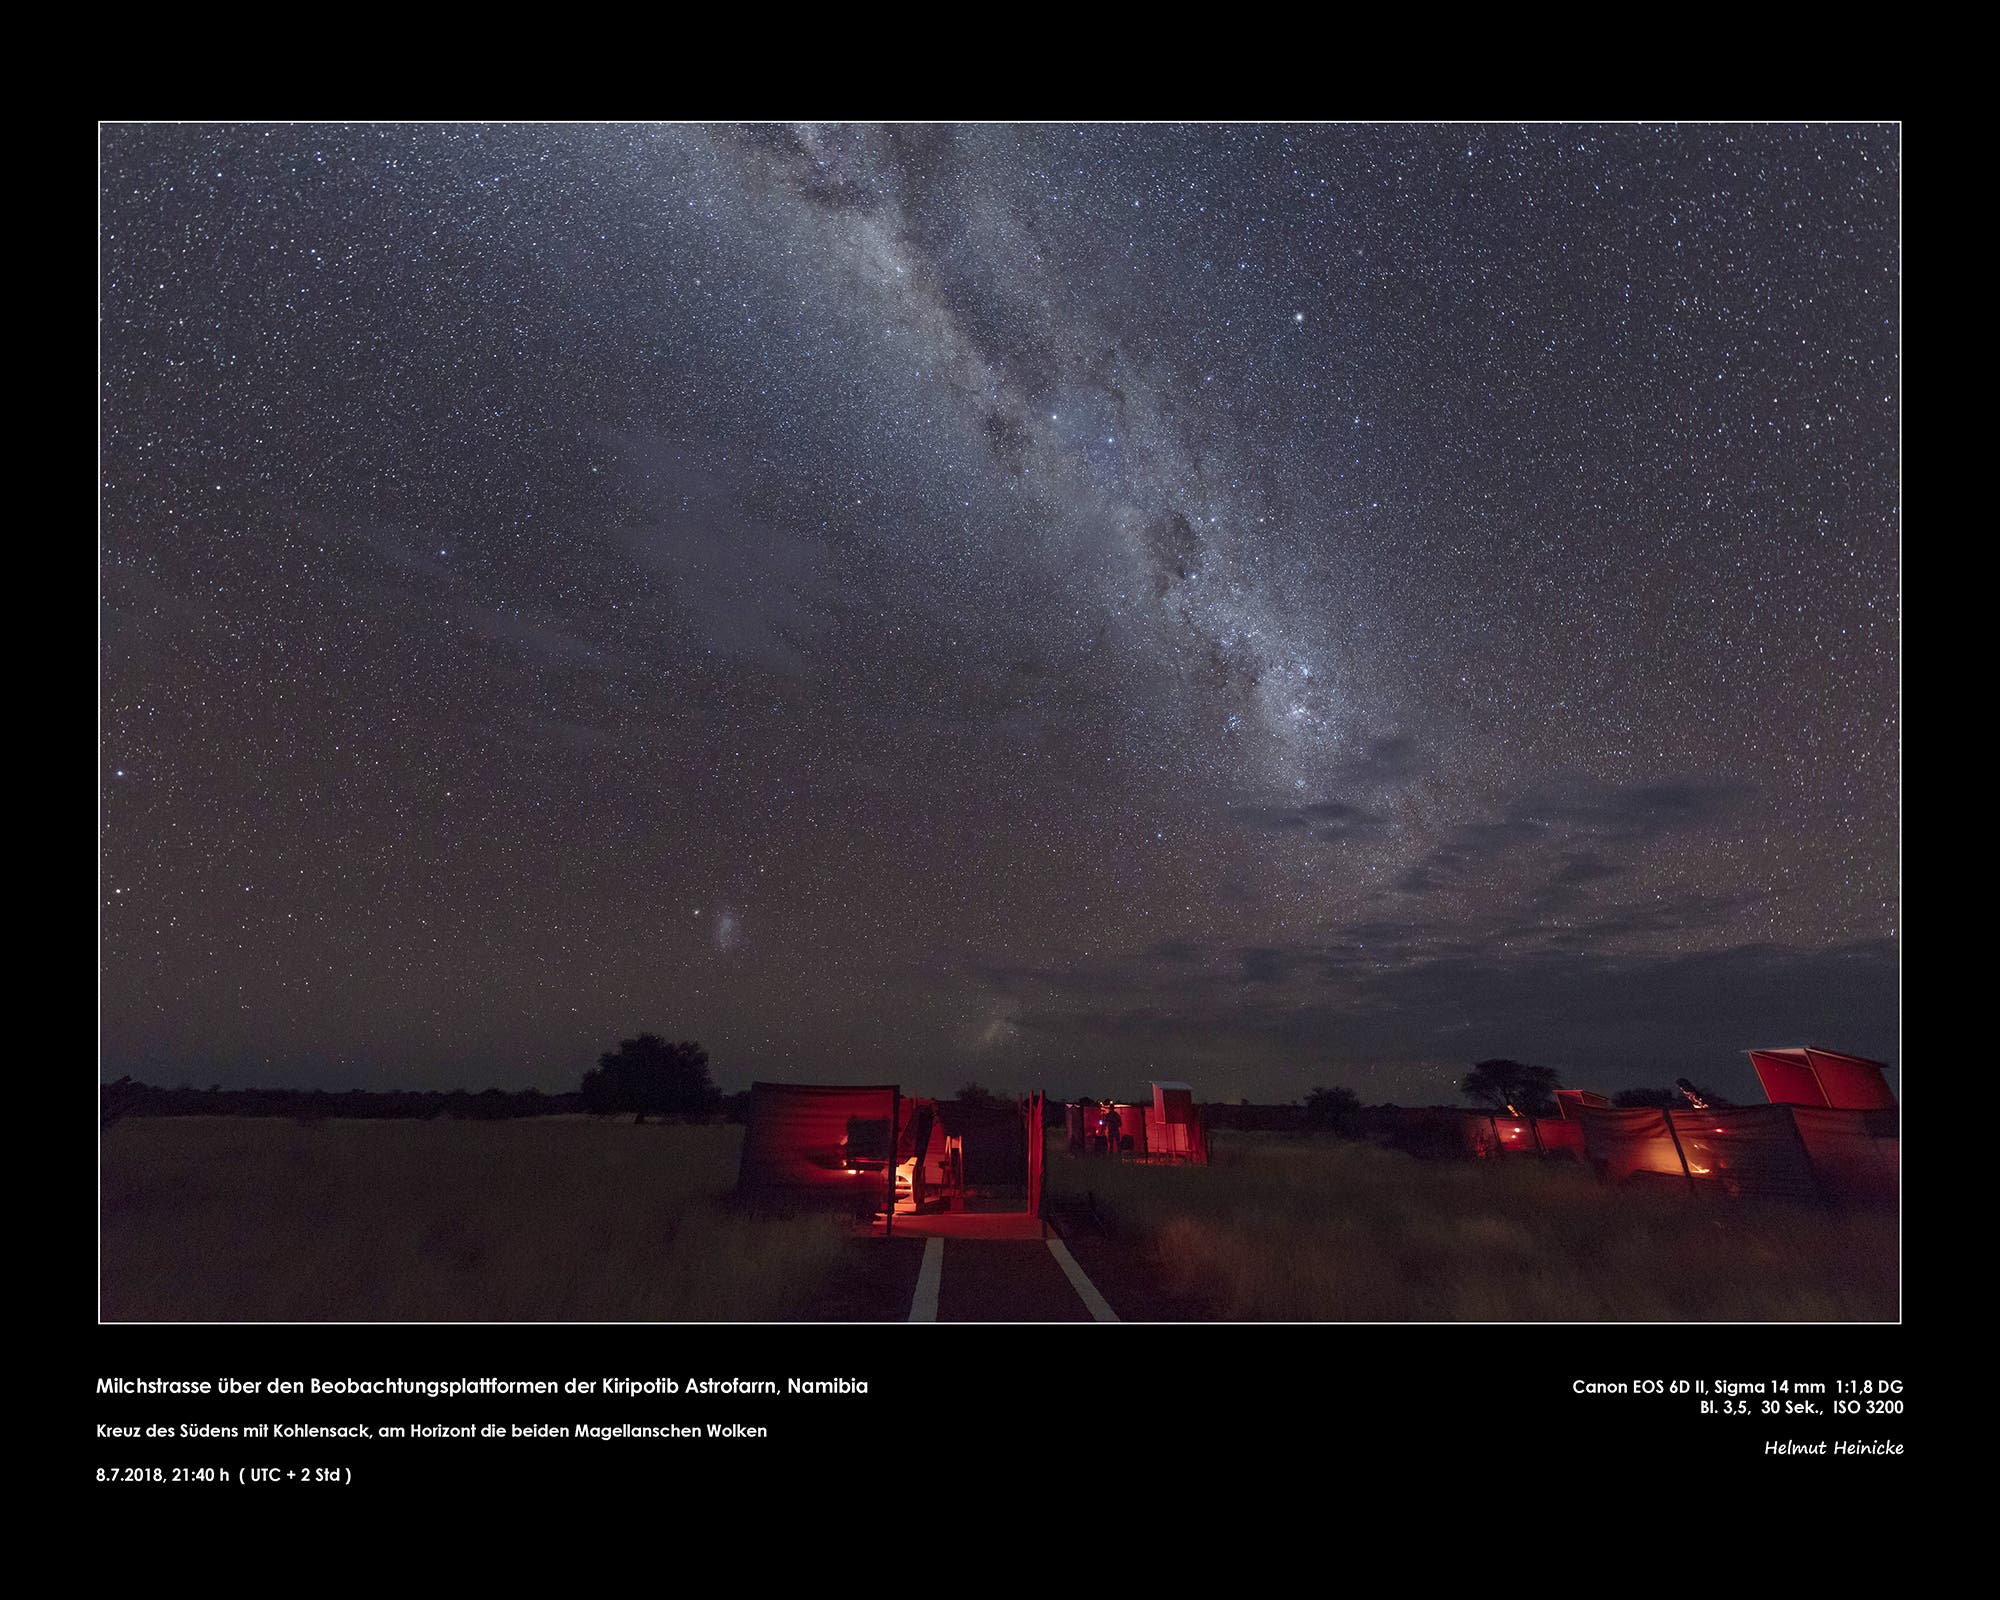 Milchstraße über den Beobachtungsplattformen der Kiripotib Astrofarm, Namibia